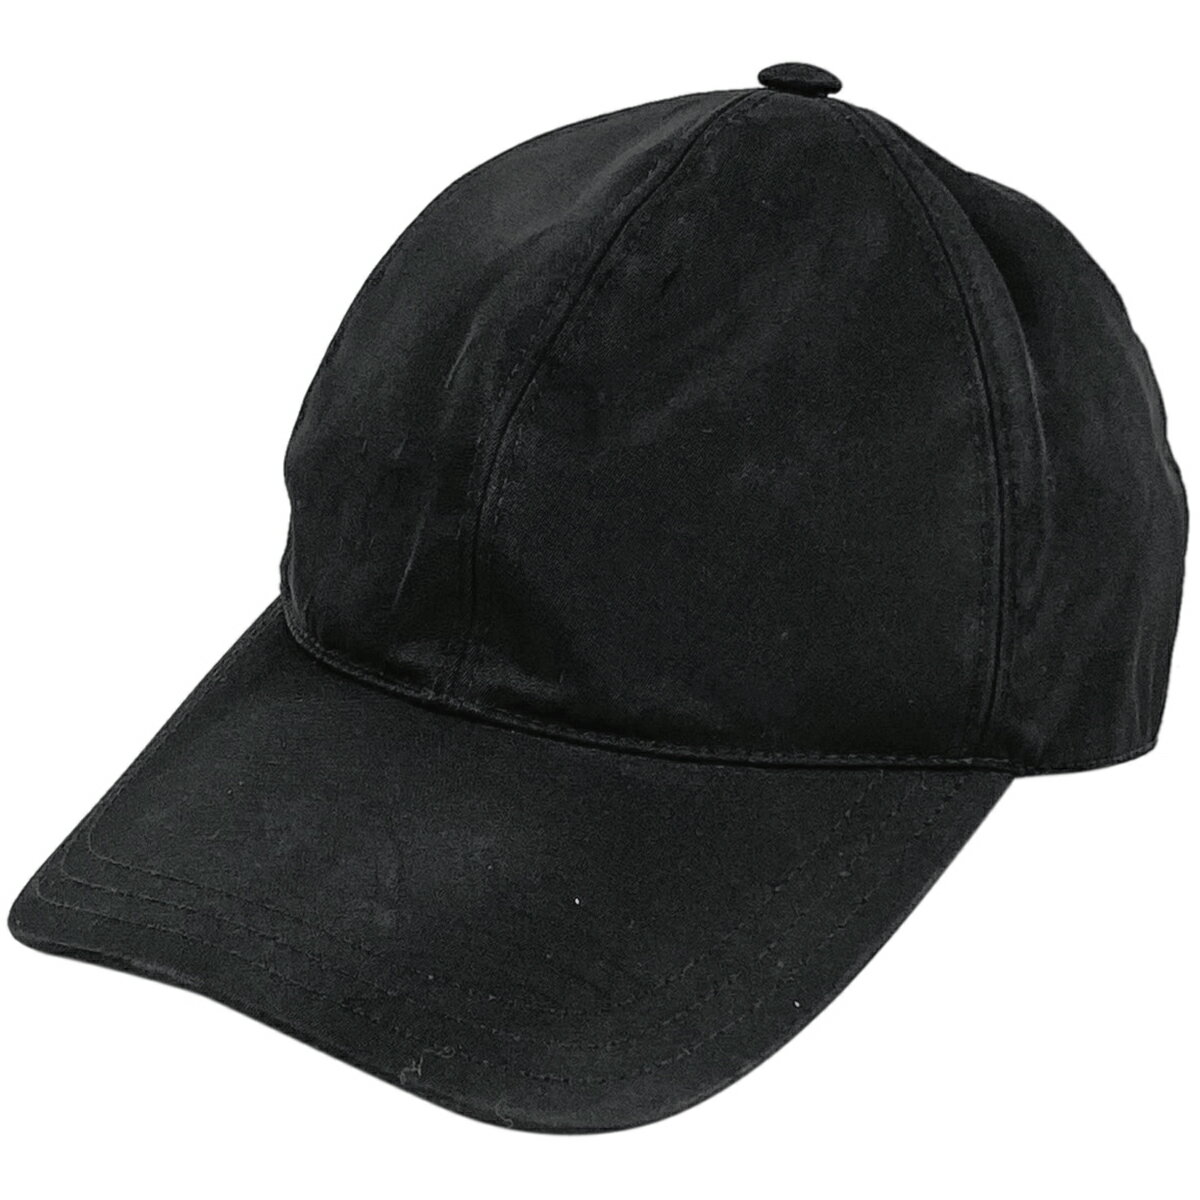 22％OFF プラダ PRADA ロゴプレート キャップ メンズ 帽子 キャップ ナイロン ネロ(ブラック) レディース 【中古】 msp29